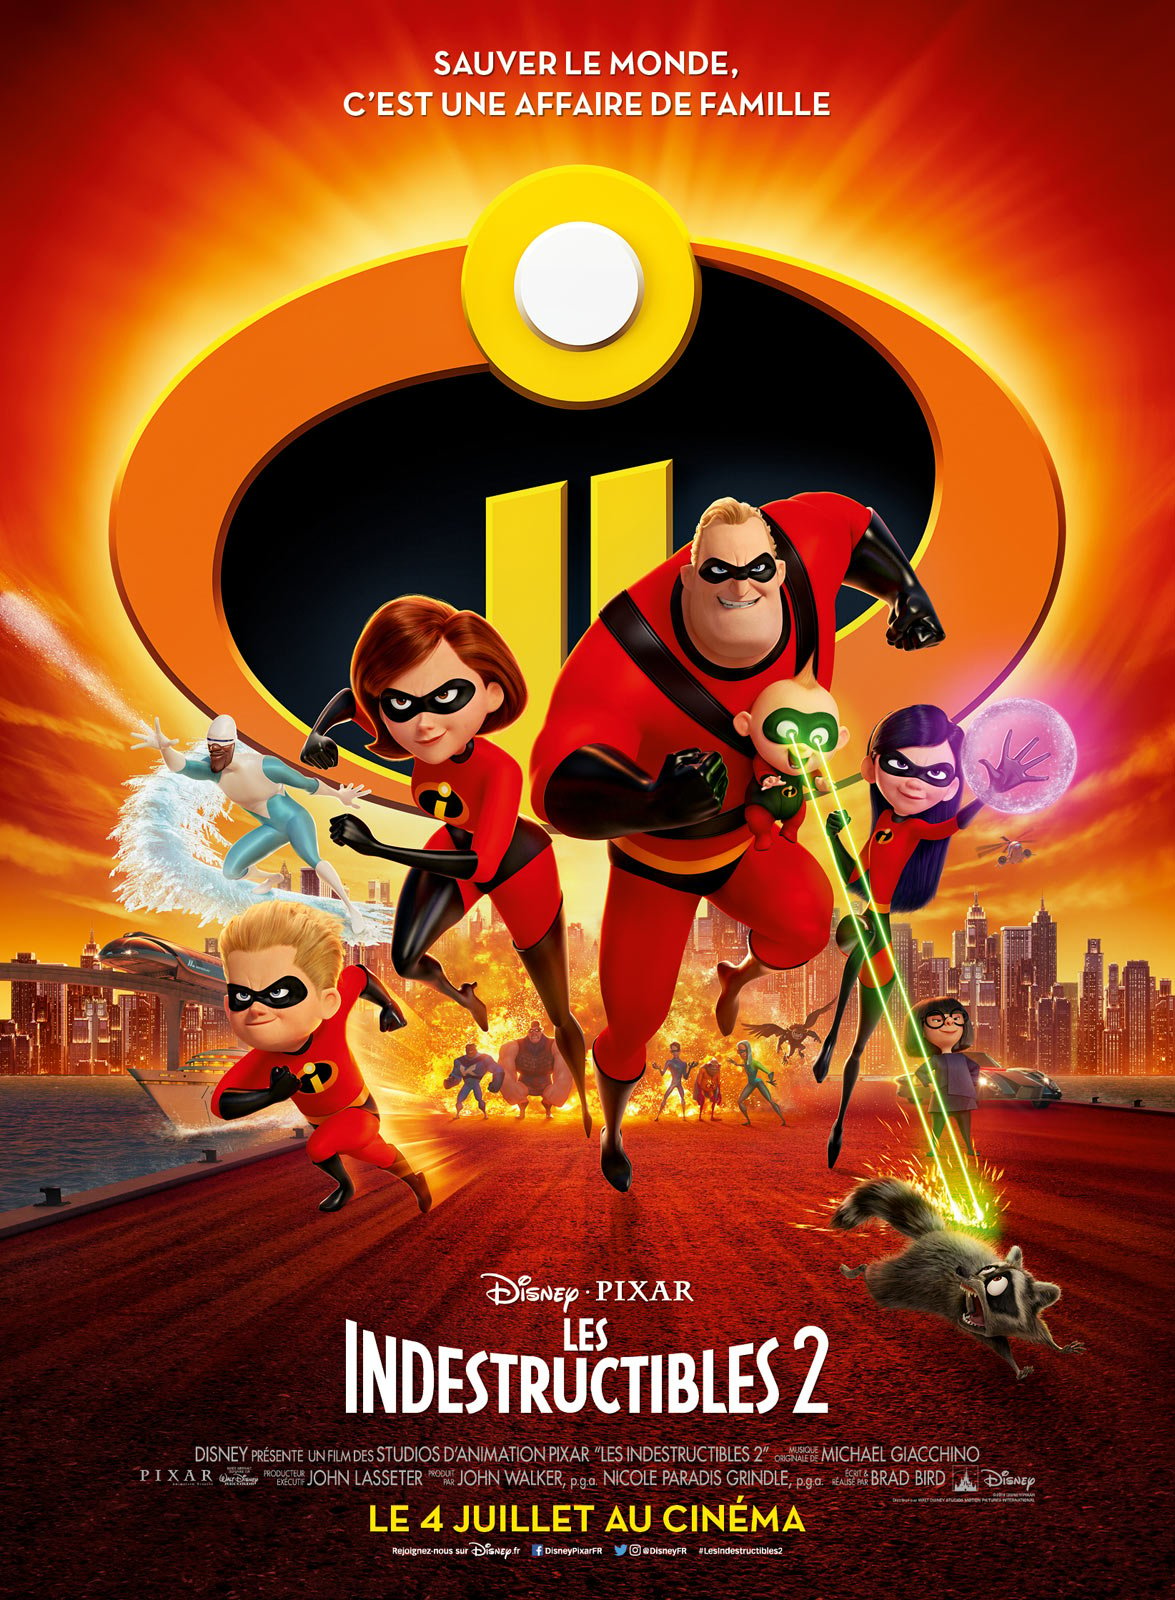 Les Indestructibles 2 - Pixar ©